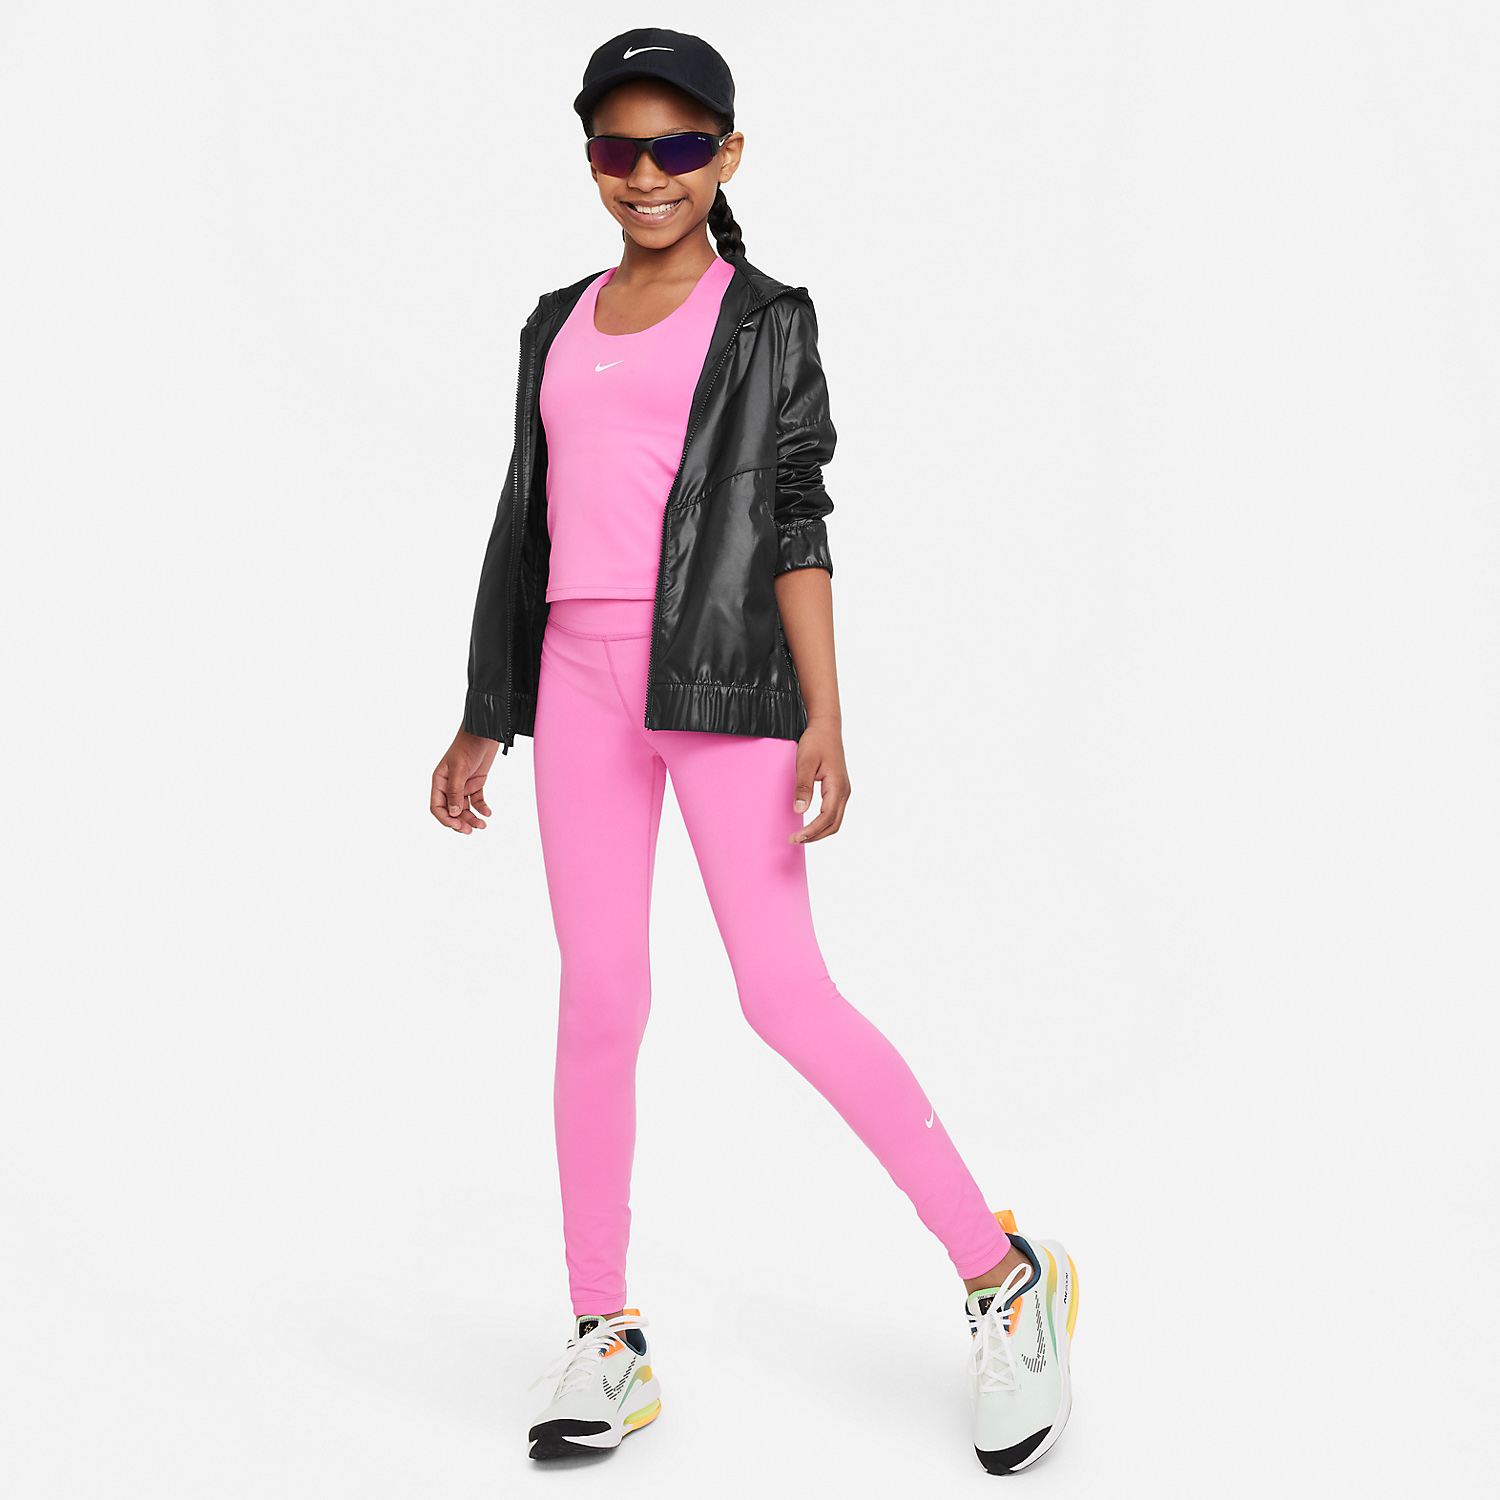 Women's leggings Nike Pro 365 Tight - playful pink/white, Tennis Zone